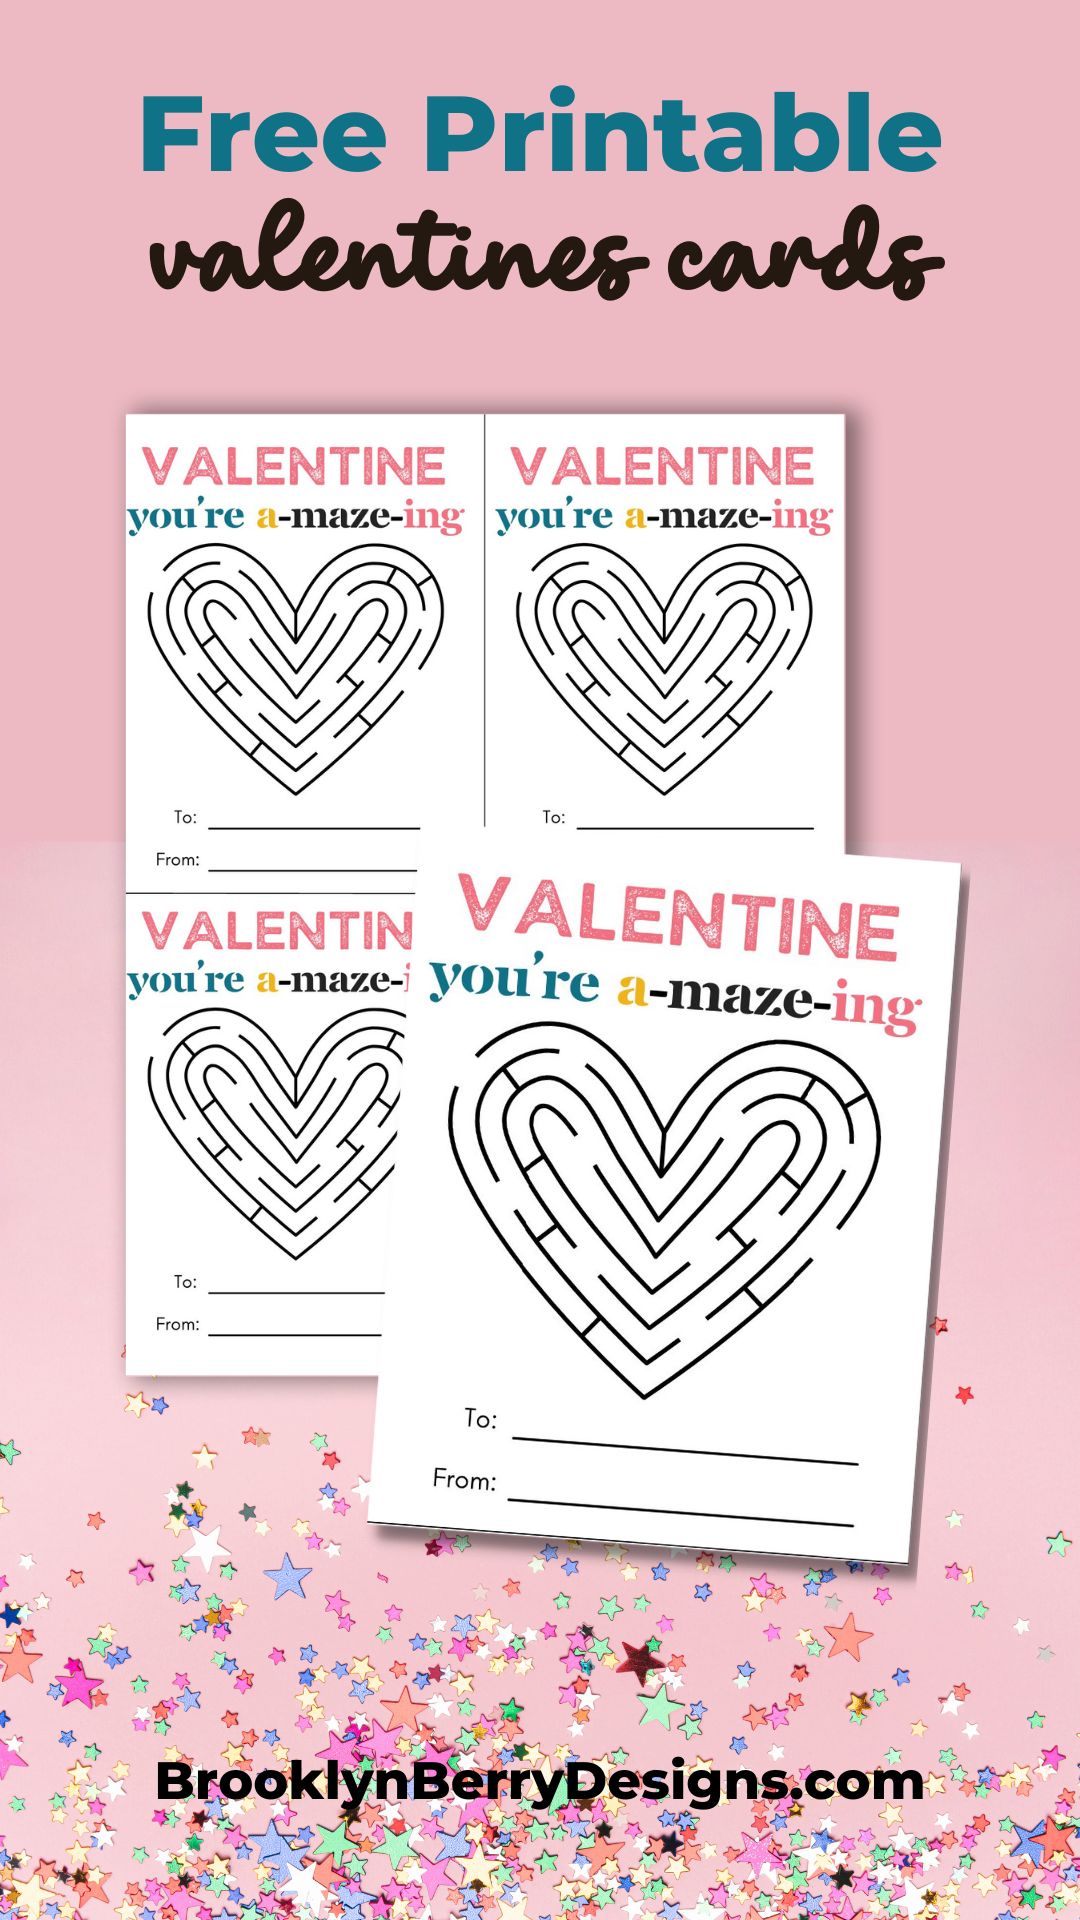 Valentine's Day Maze Collection, Valentine Maze Printable